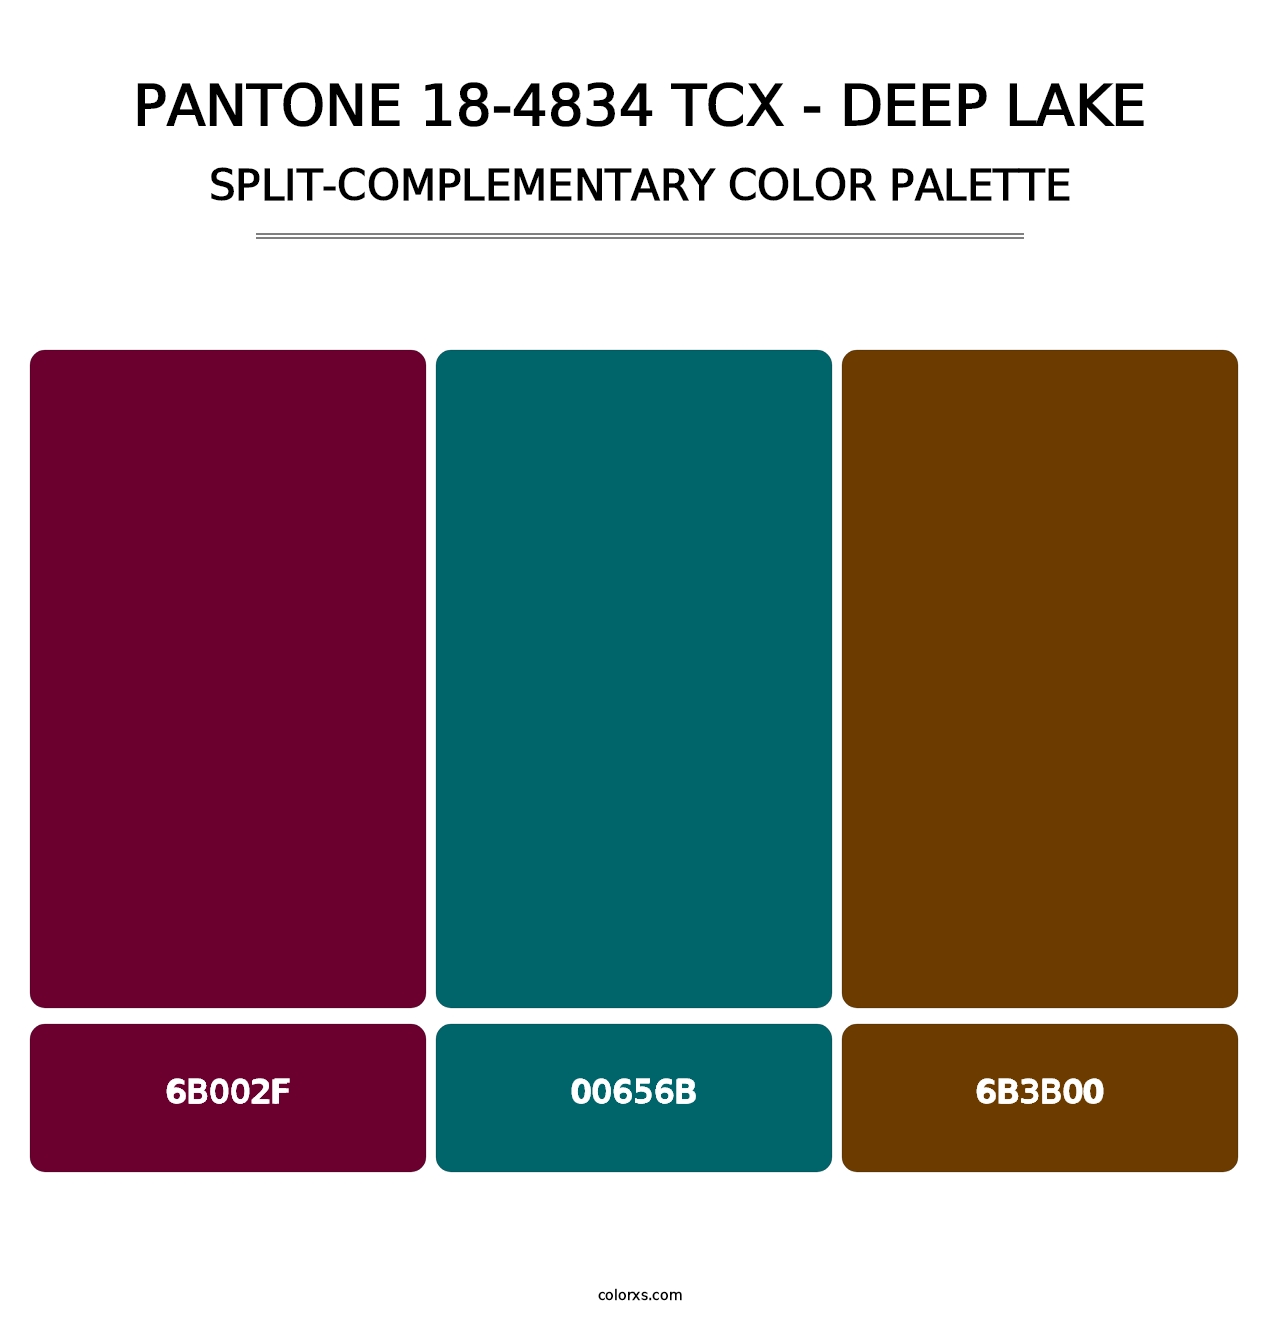 PANTONE 18-4834 TCX - Deep Lake - Split-Complementary Color Palette